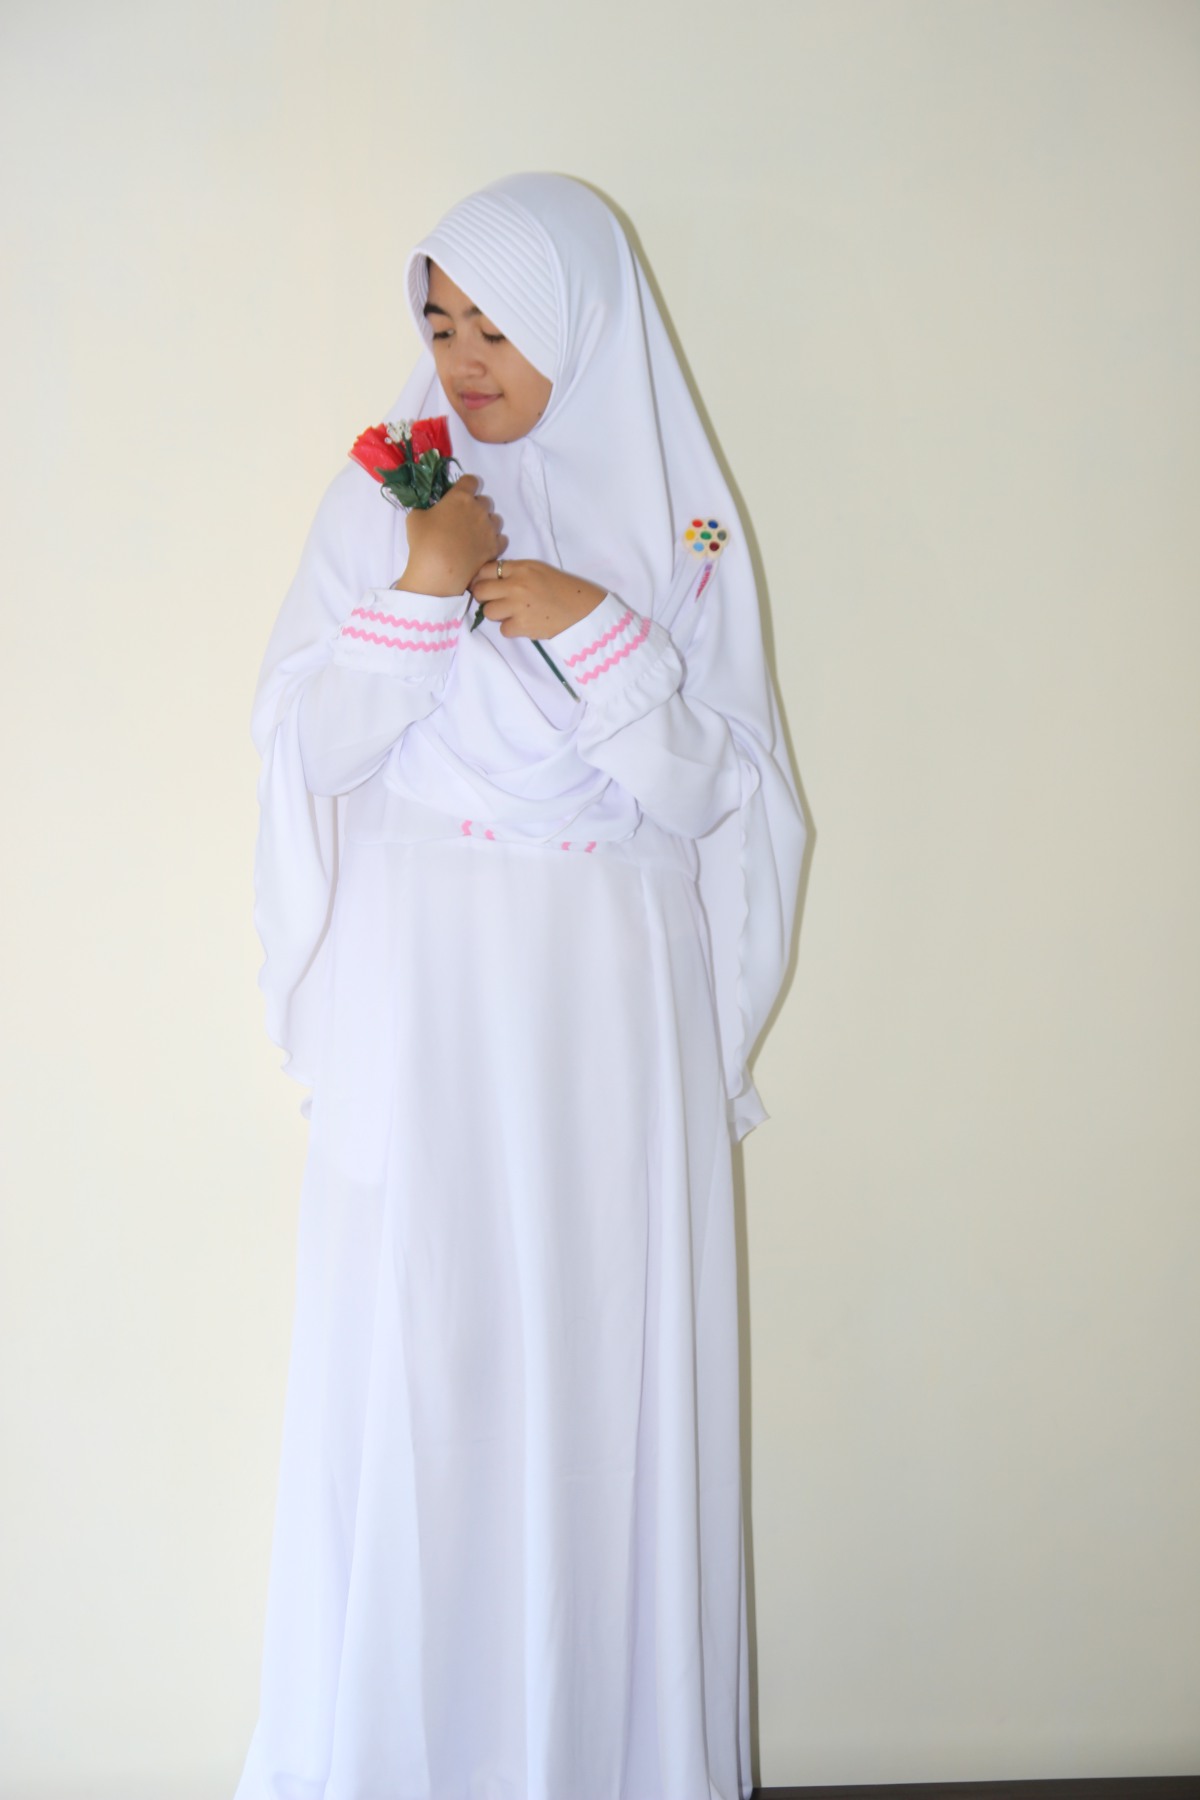  jual gamis manisqu adzkia hijab syar i di Jakarta putih 